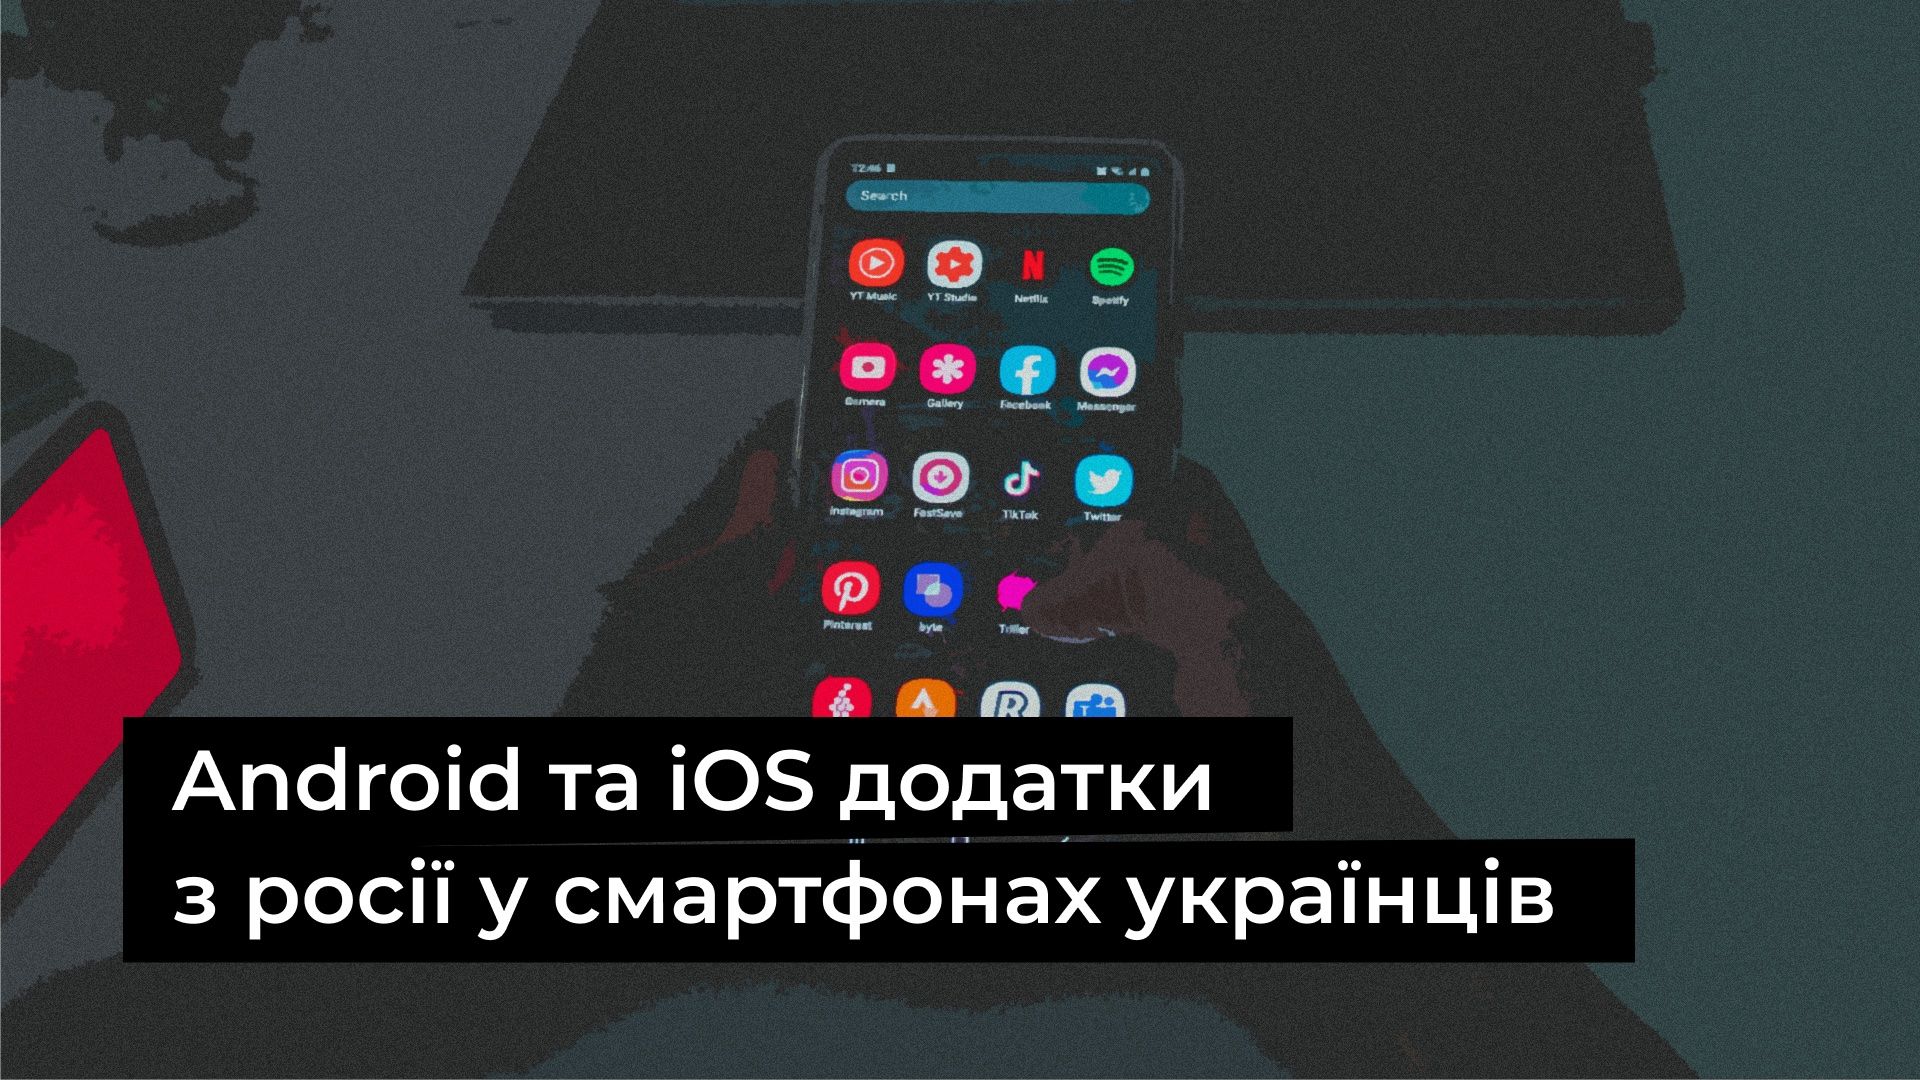 В смартфонах украинцев есть немало приложений, угрожающих безопасности пользователей